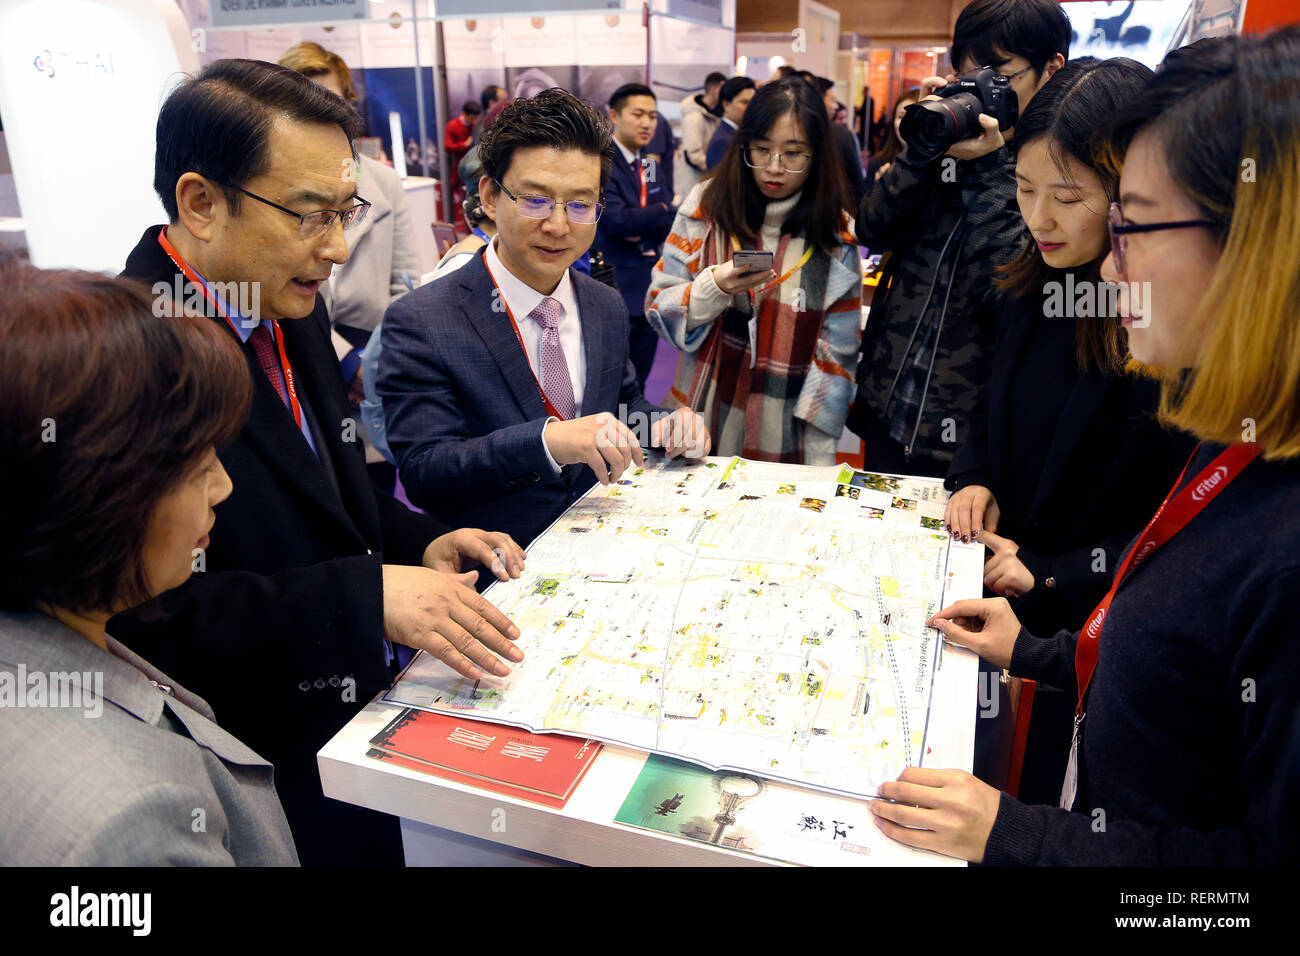 L'ambassadeur de Chine de l'Espagne, visitez le ventilateur Lyu Chine peuplement pendant la FITUR journée d'ouverture. Foire Internationale du Tourisme (Fitur) est un espace de rencontre international pour les professionnels du tourisme à travers le monde. Banque D'Images